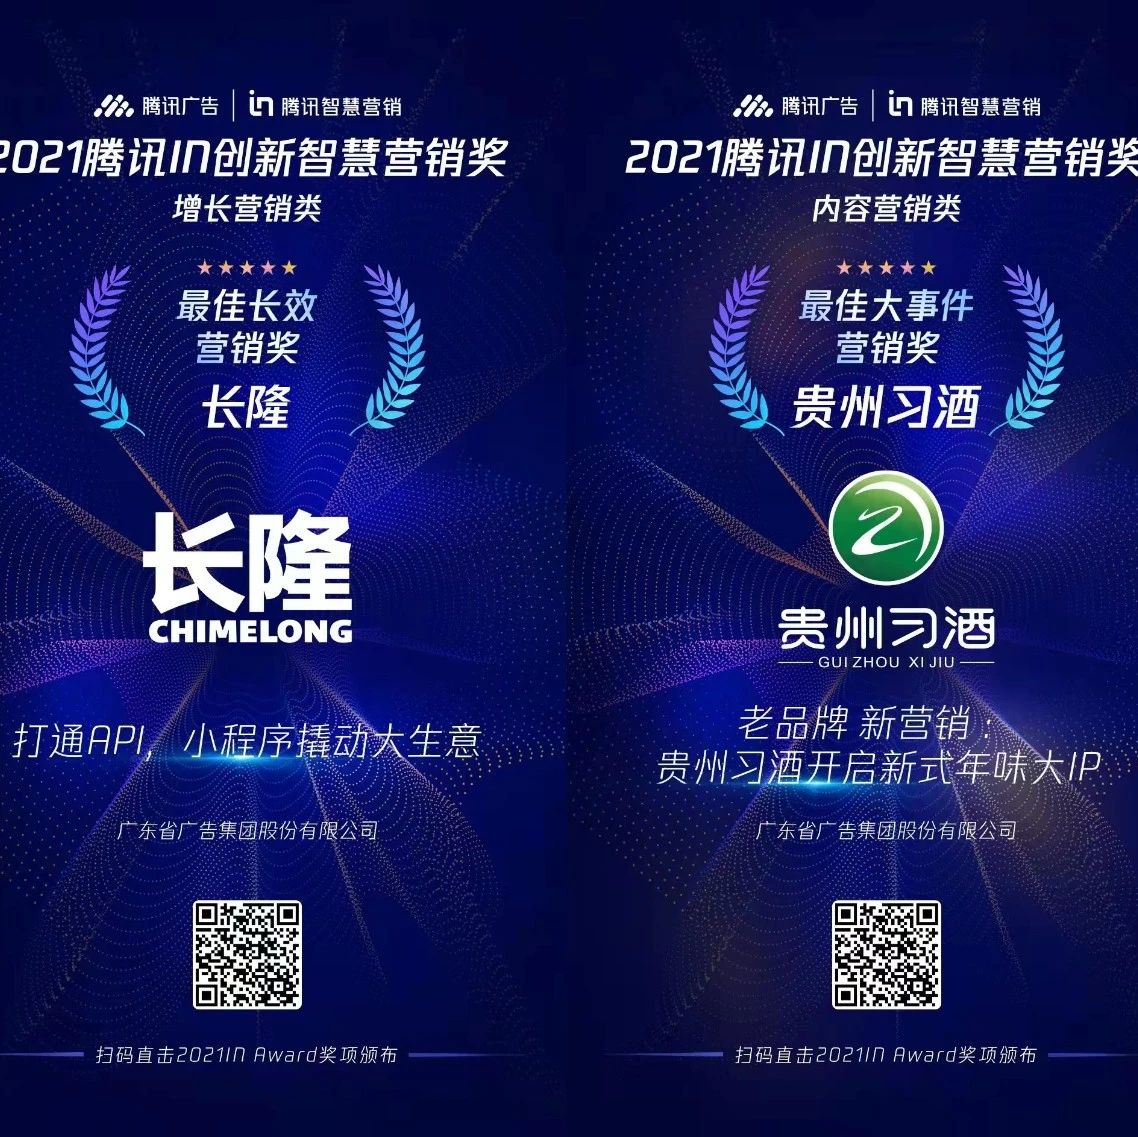 省广集团荣膺2021腾讯智慧营销峰会两项大奖